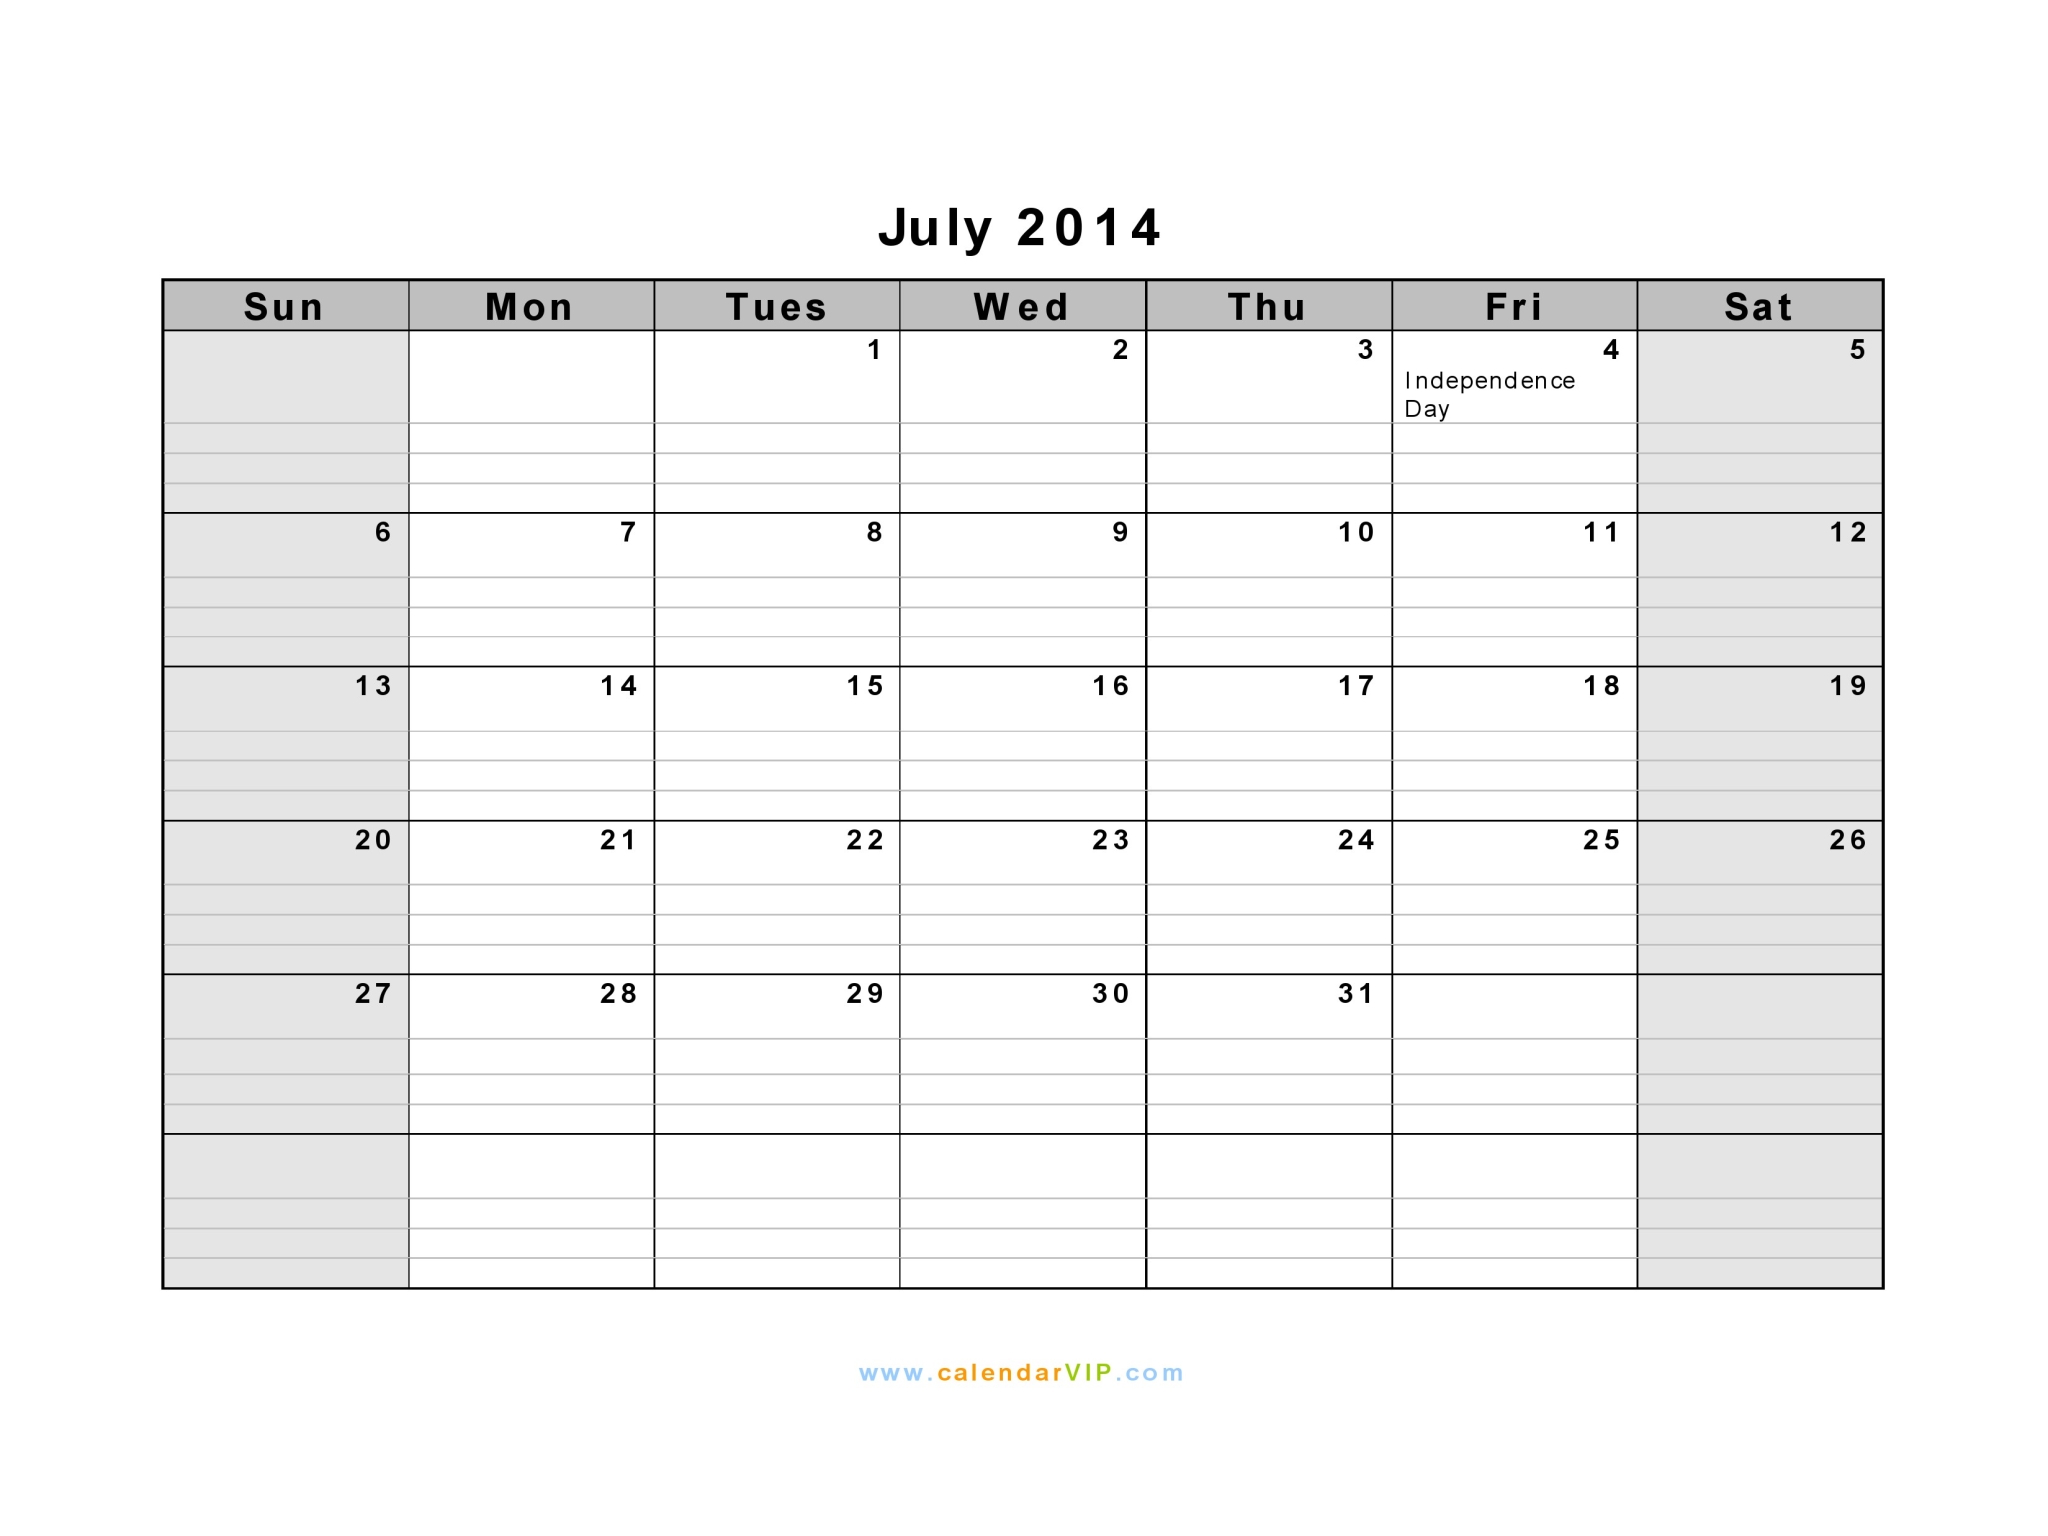 Outlook Calendar Template 2016 from www.calendarvip.com